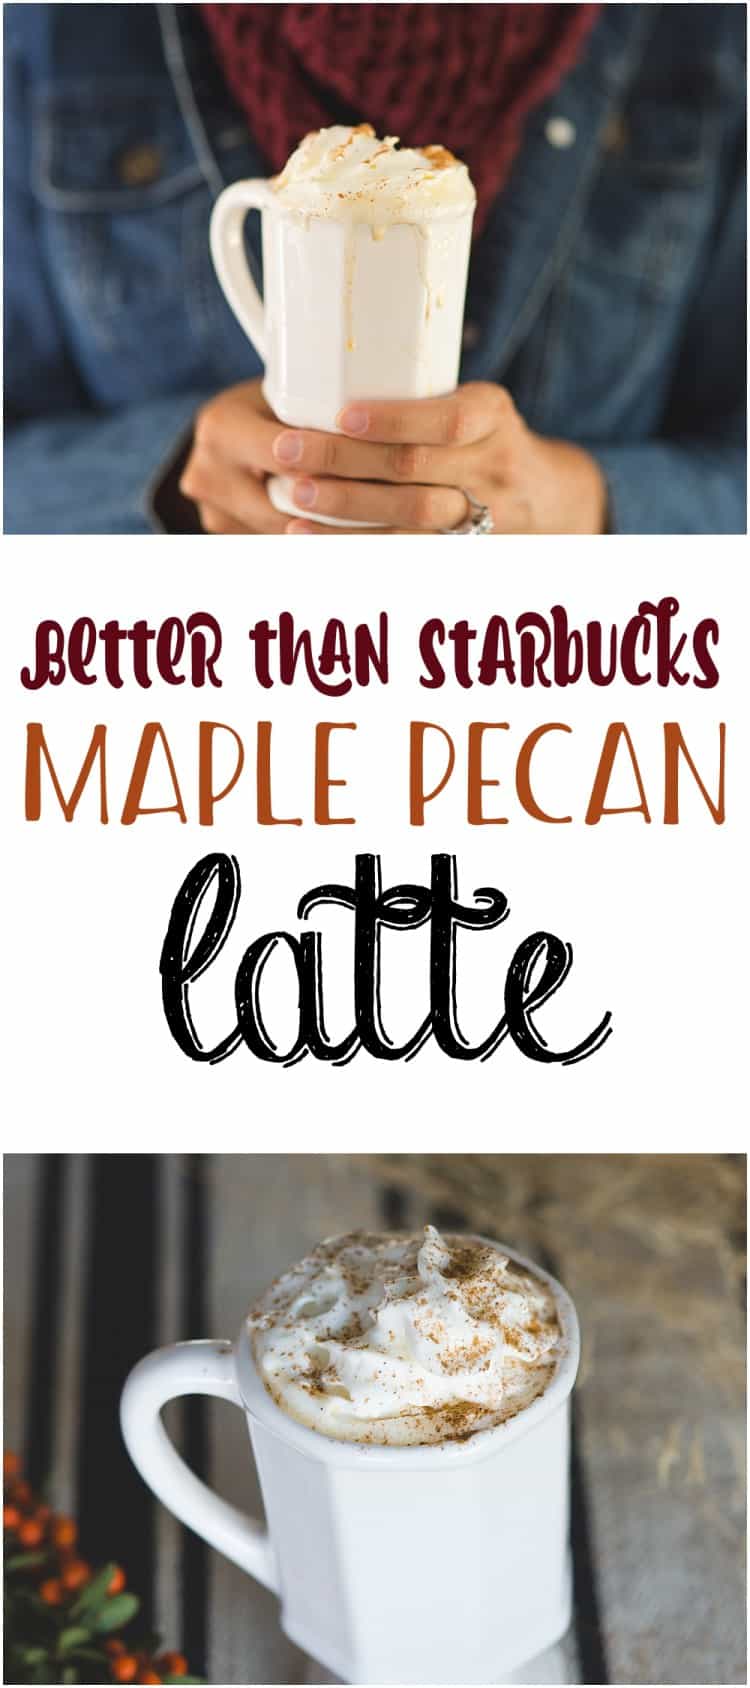 Maple pecan latte